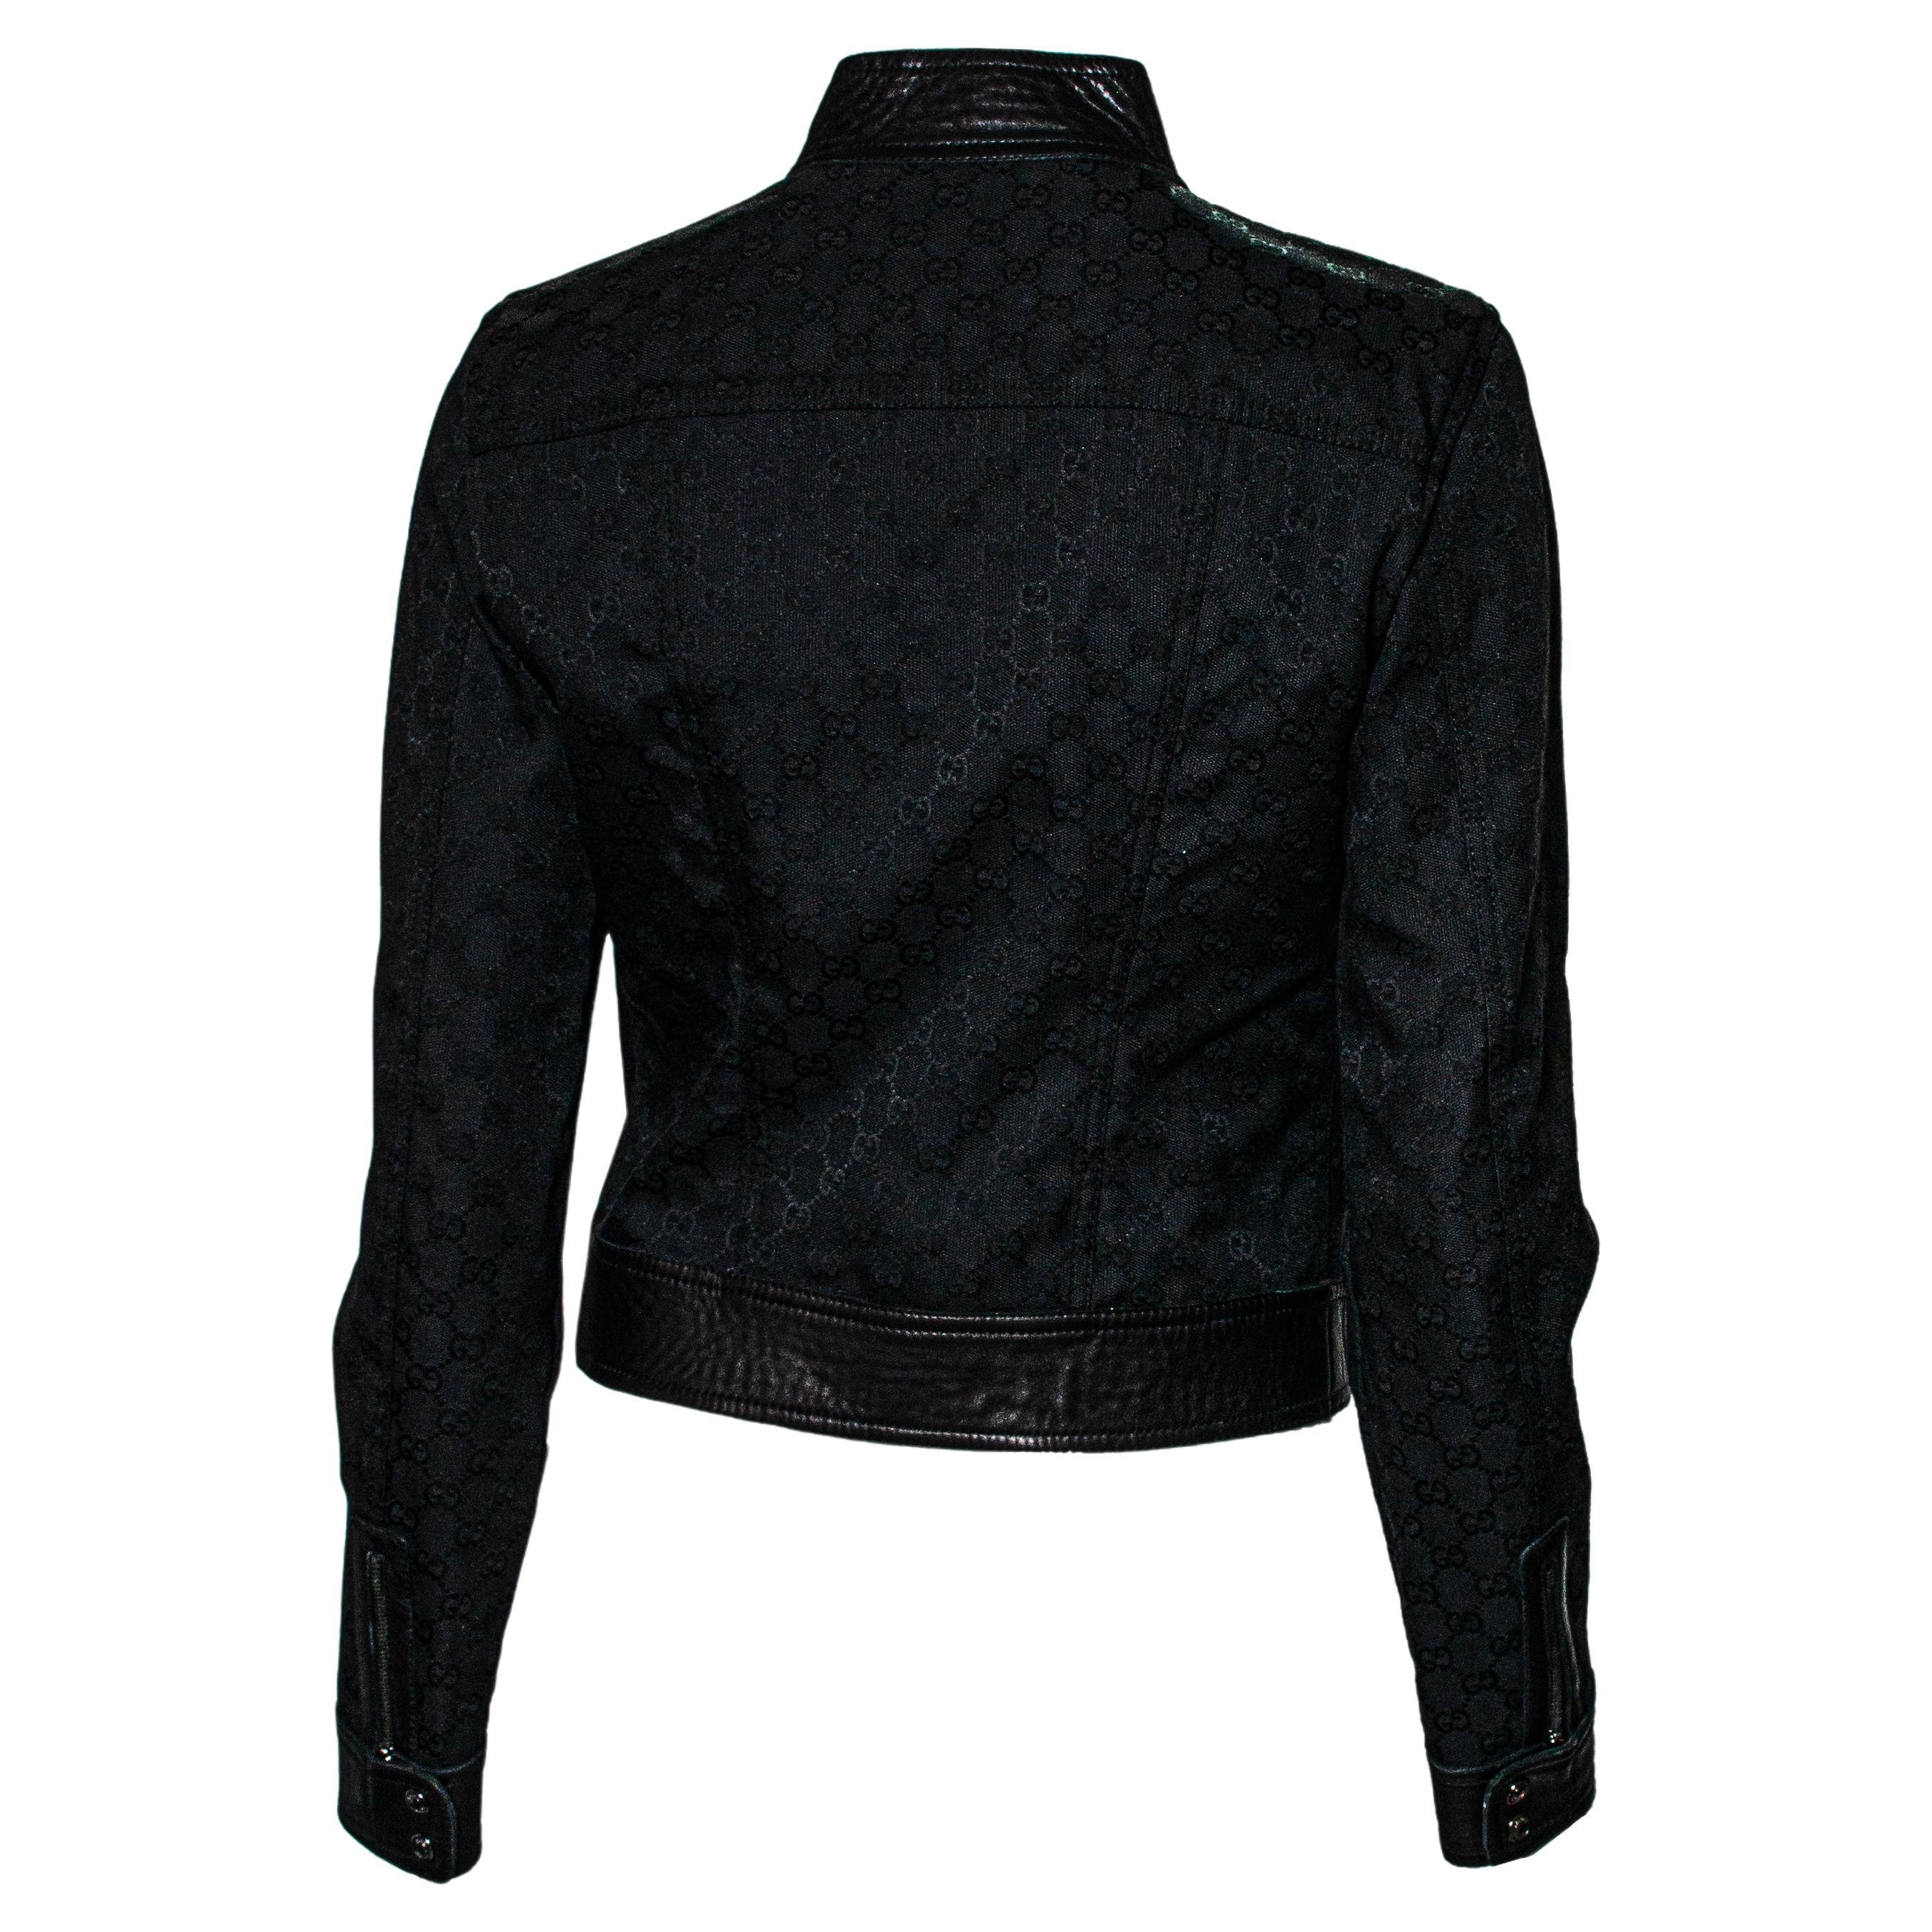 Mehr Gucci geht nicht... Diese von Tom Ford für die F/W 2000-Kollektion entworfene Jacke besteht aus Leder und ist mit einem schwarzen Gucci-Monogramm aus Canvas überzogen. Dieses Stück hat zwei Reißverschlusstaschen am Vorderteil und einen